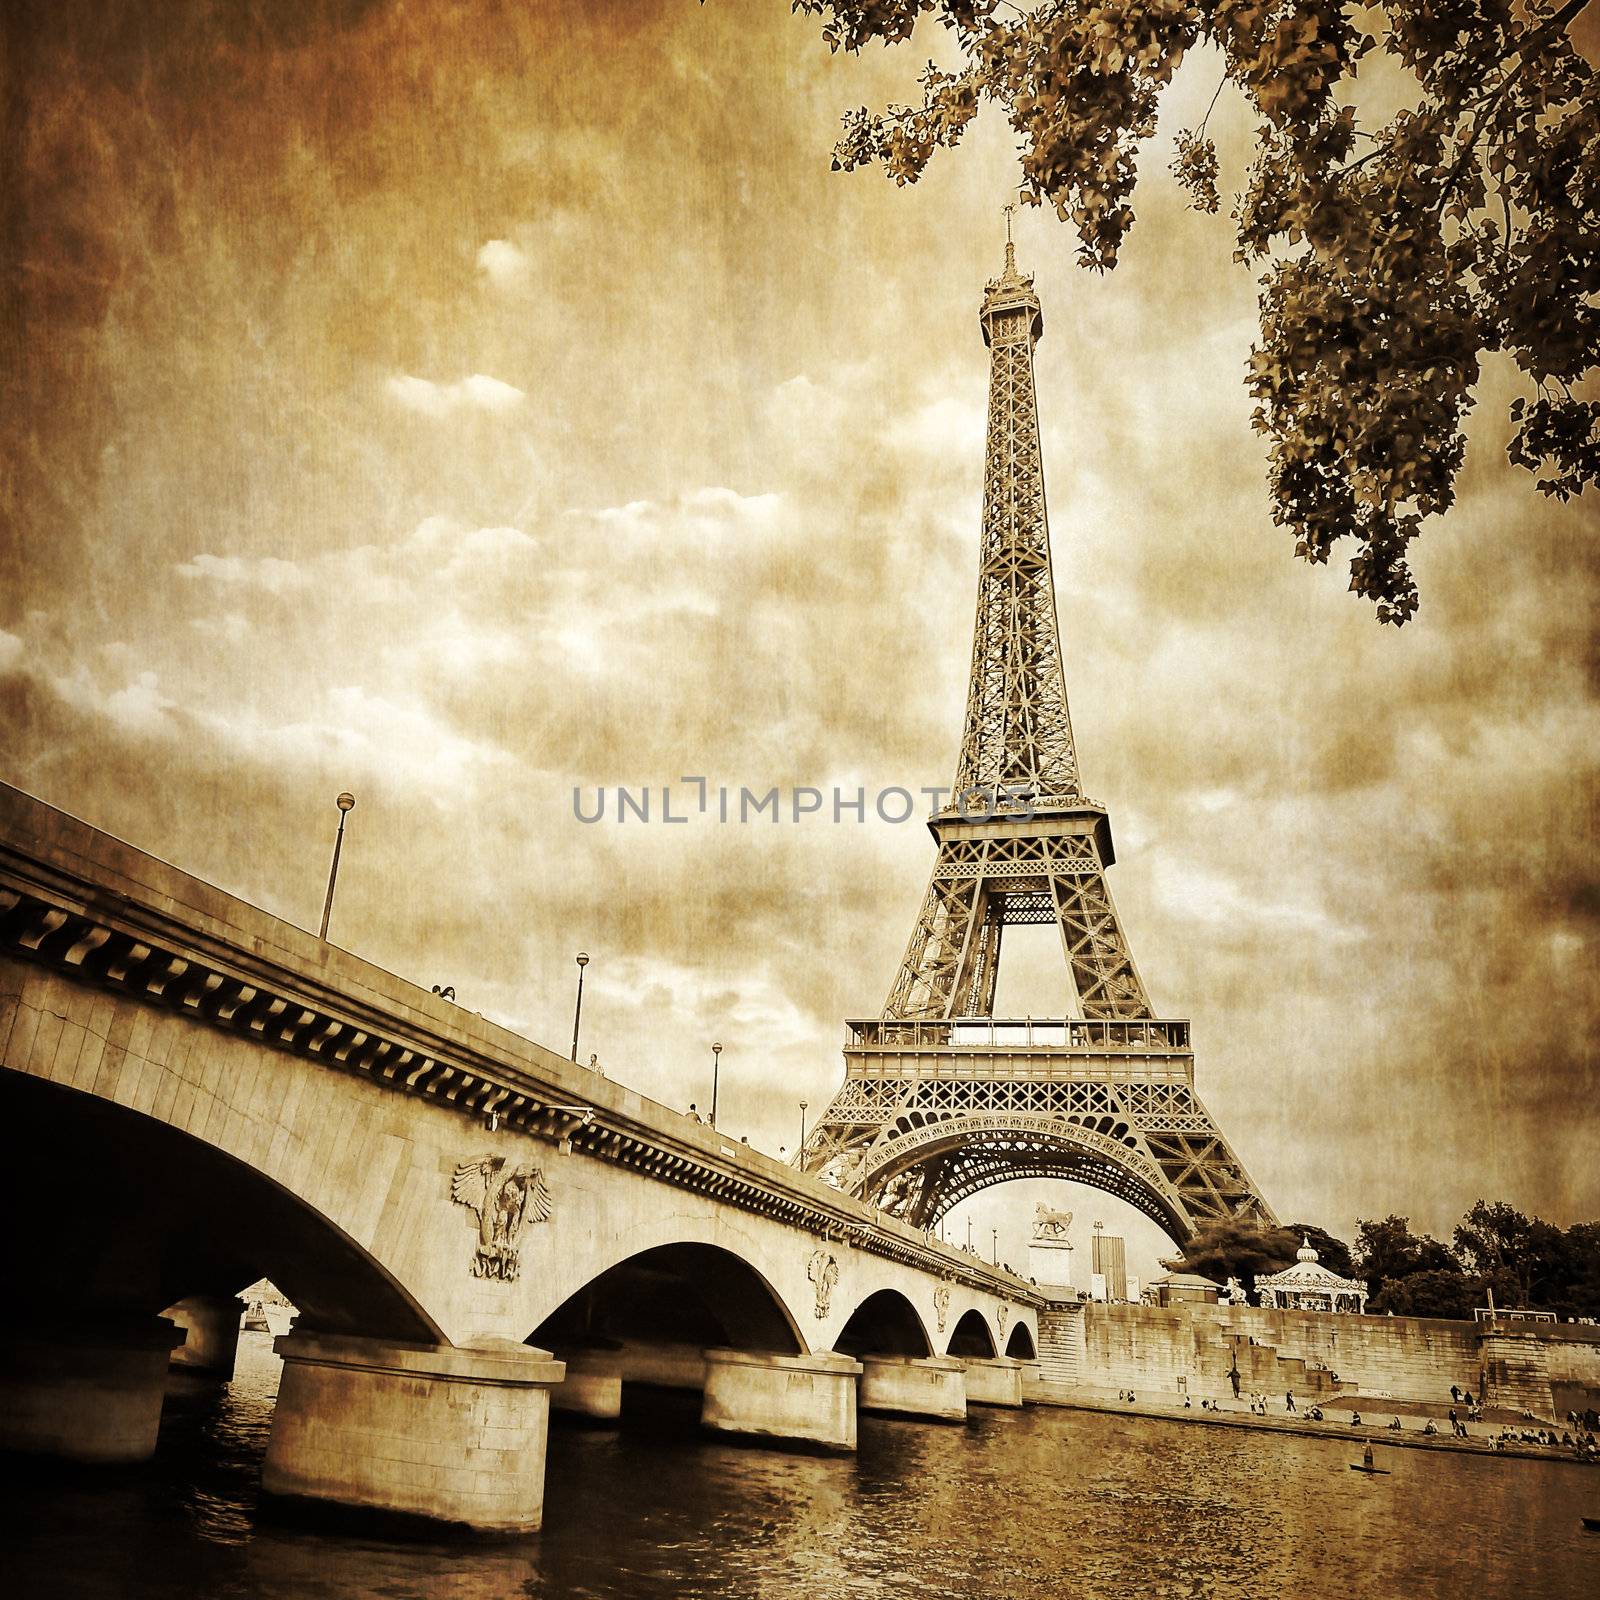 Eiffel tower monochrome vintage view with bridge, Paris, France